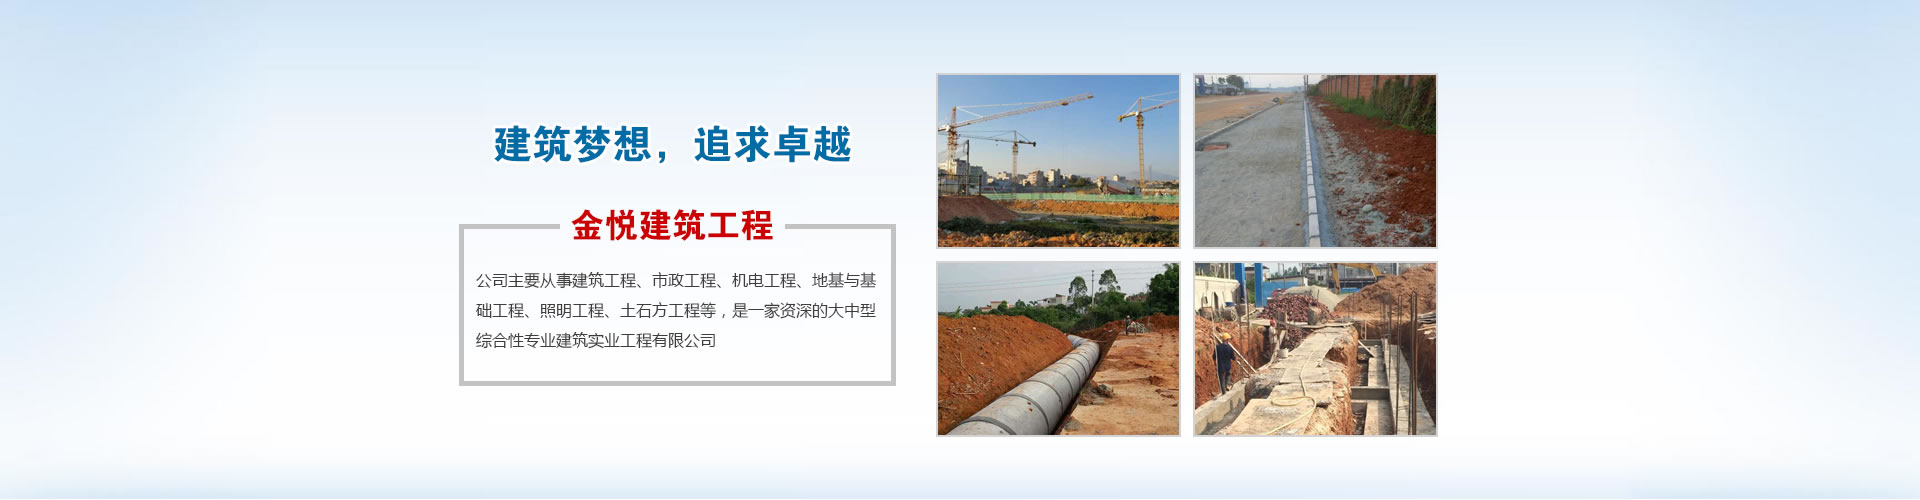 惠州建筑工程